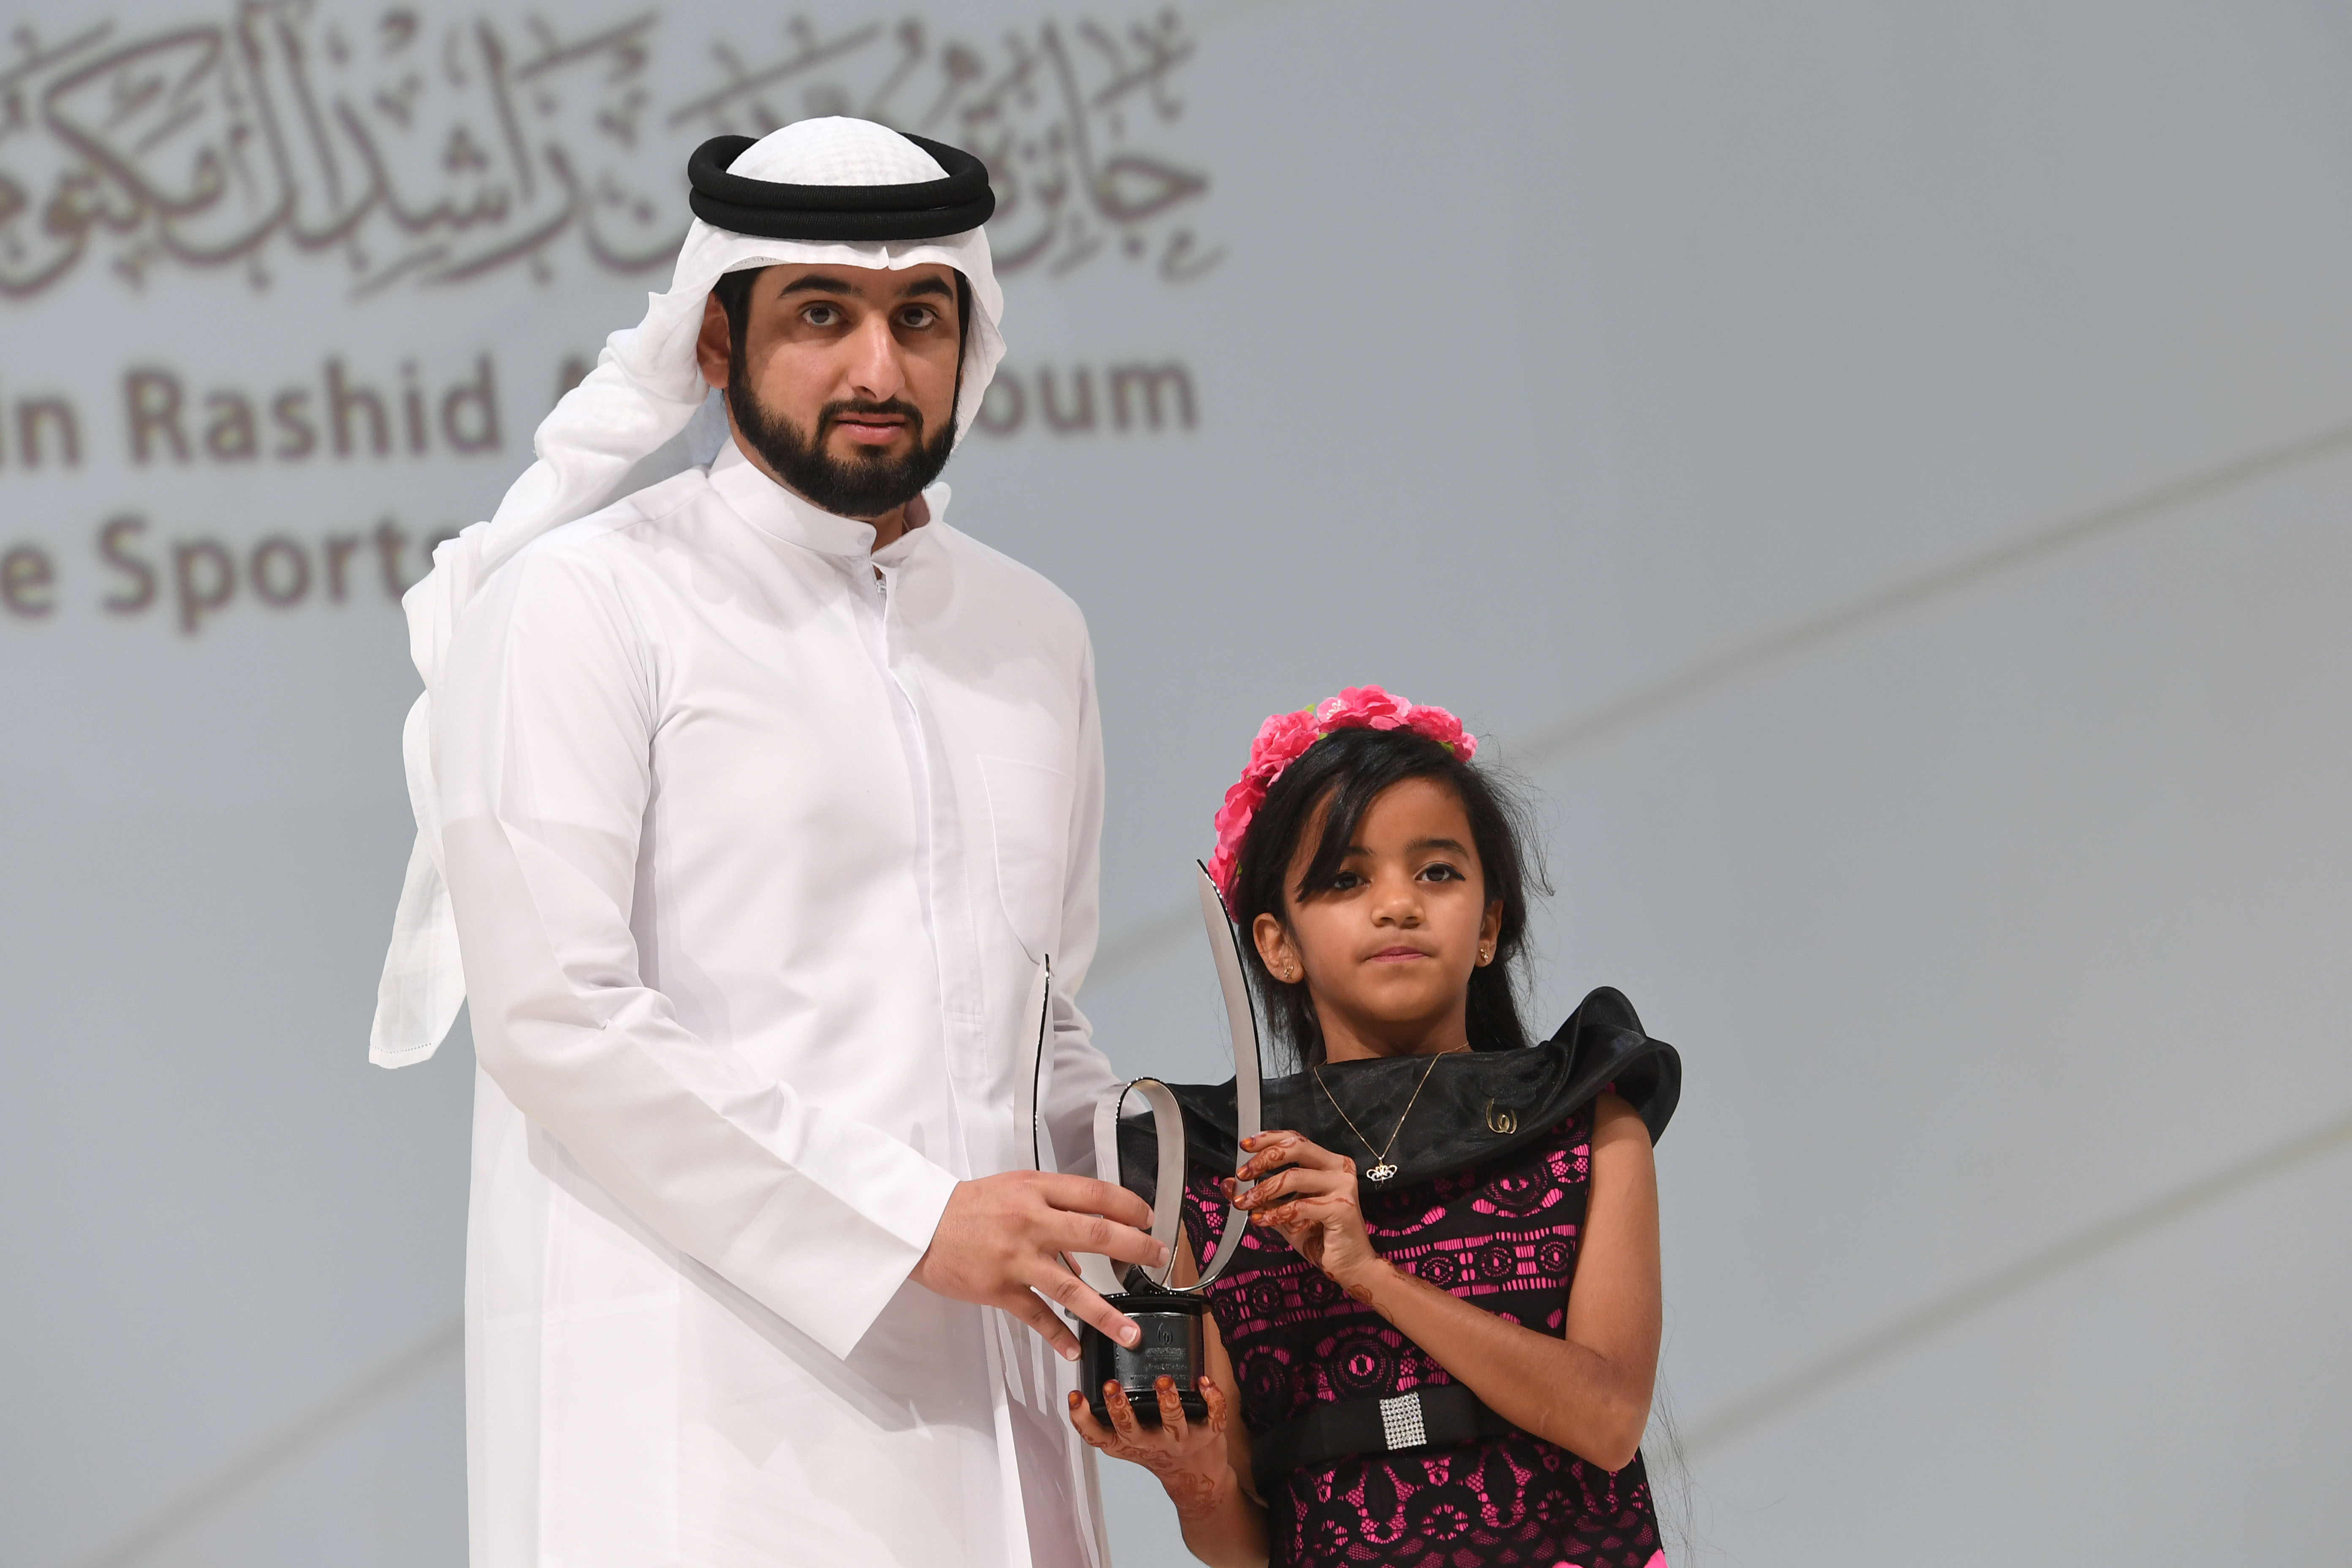 حمدان بن محمد يكرم الفائزين بالدورة الثامنة من جائزة محمد بن راشد آل مكتوم